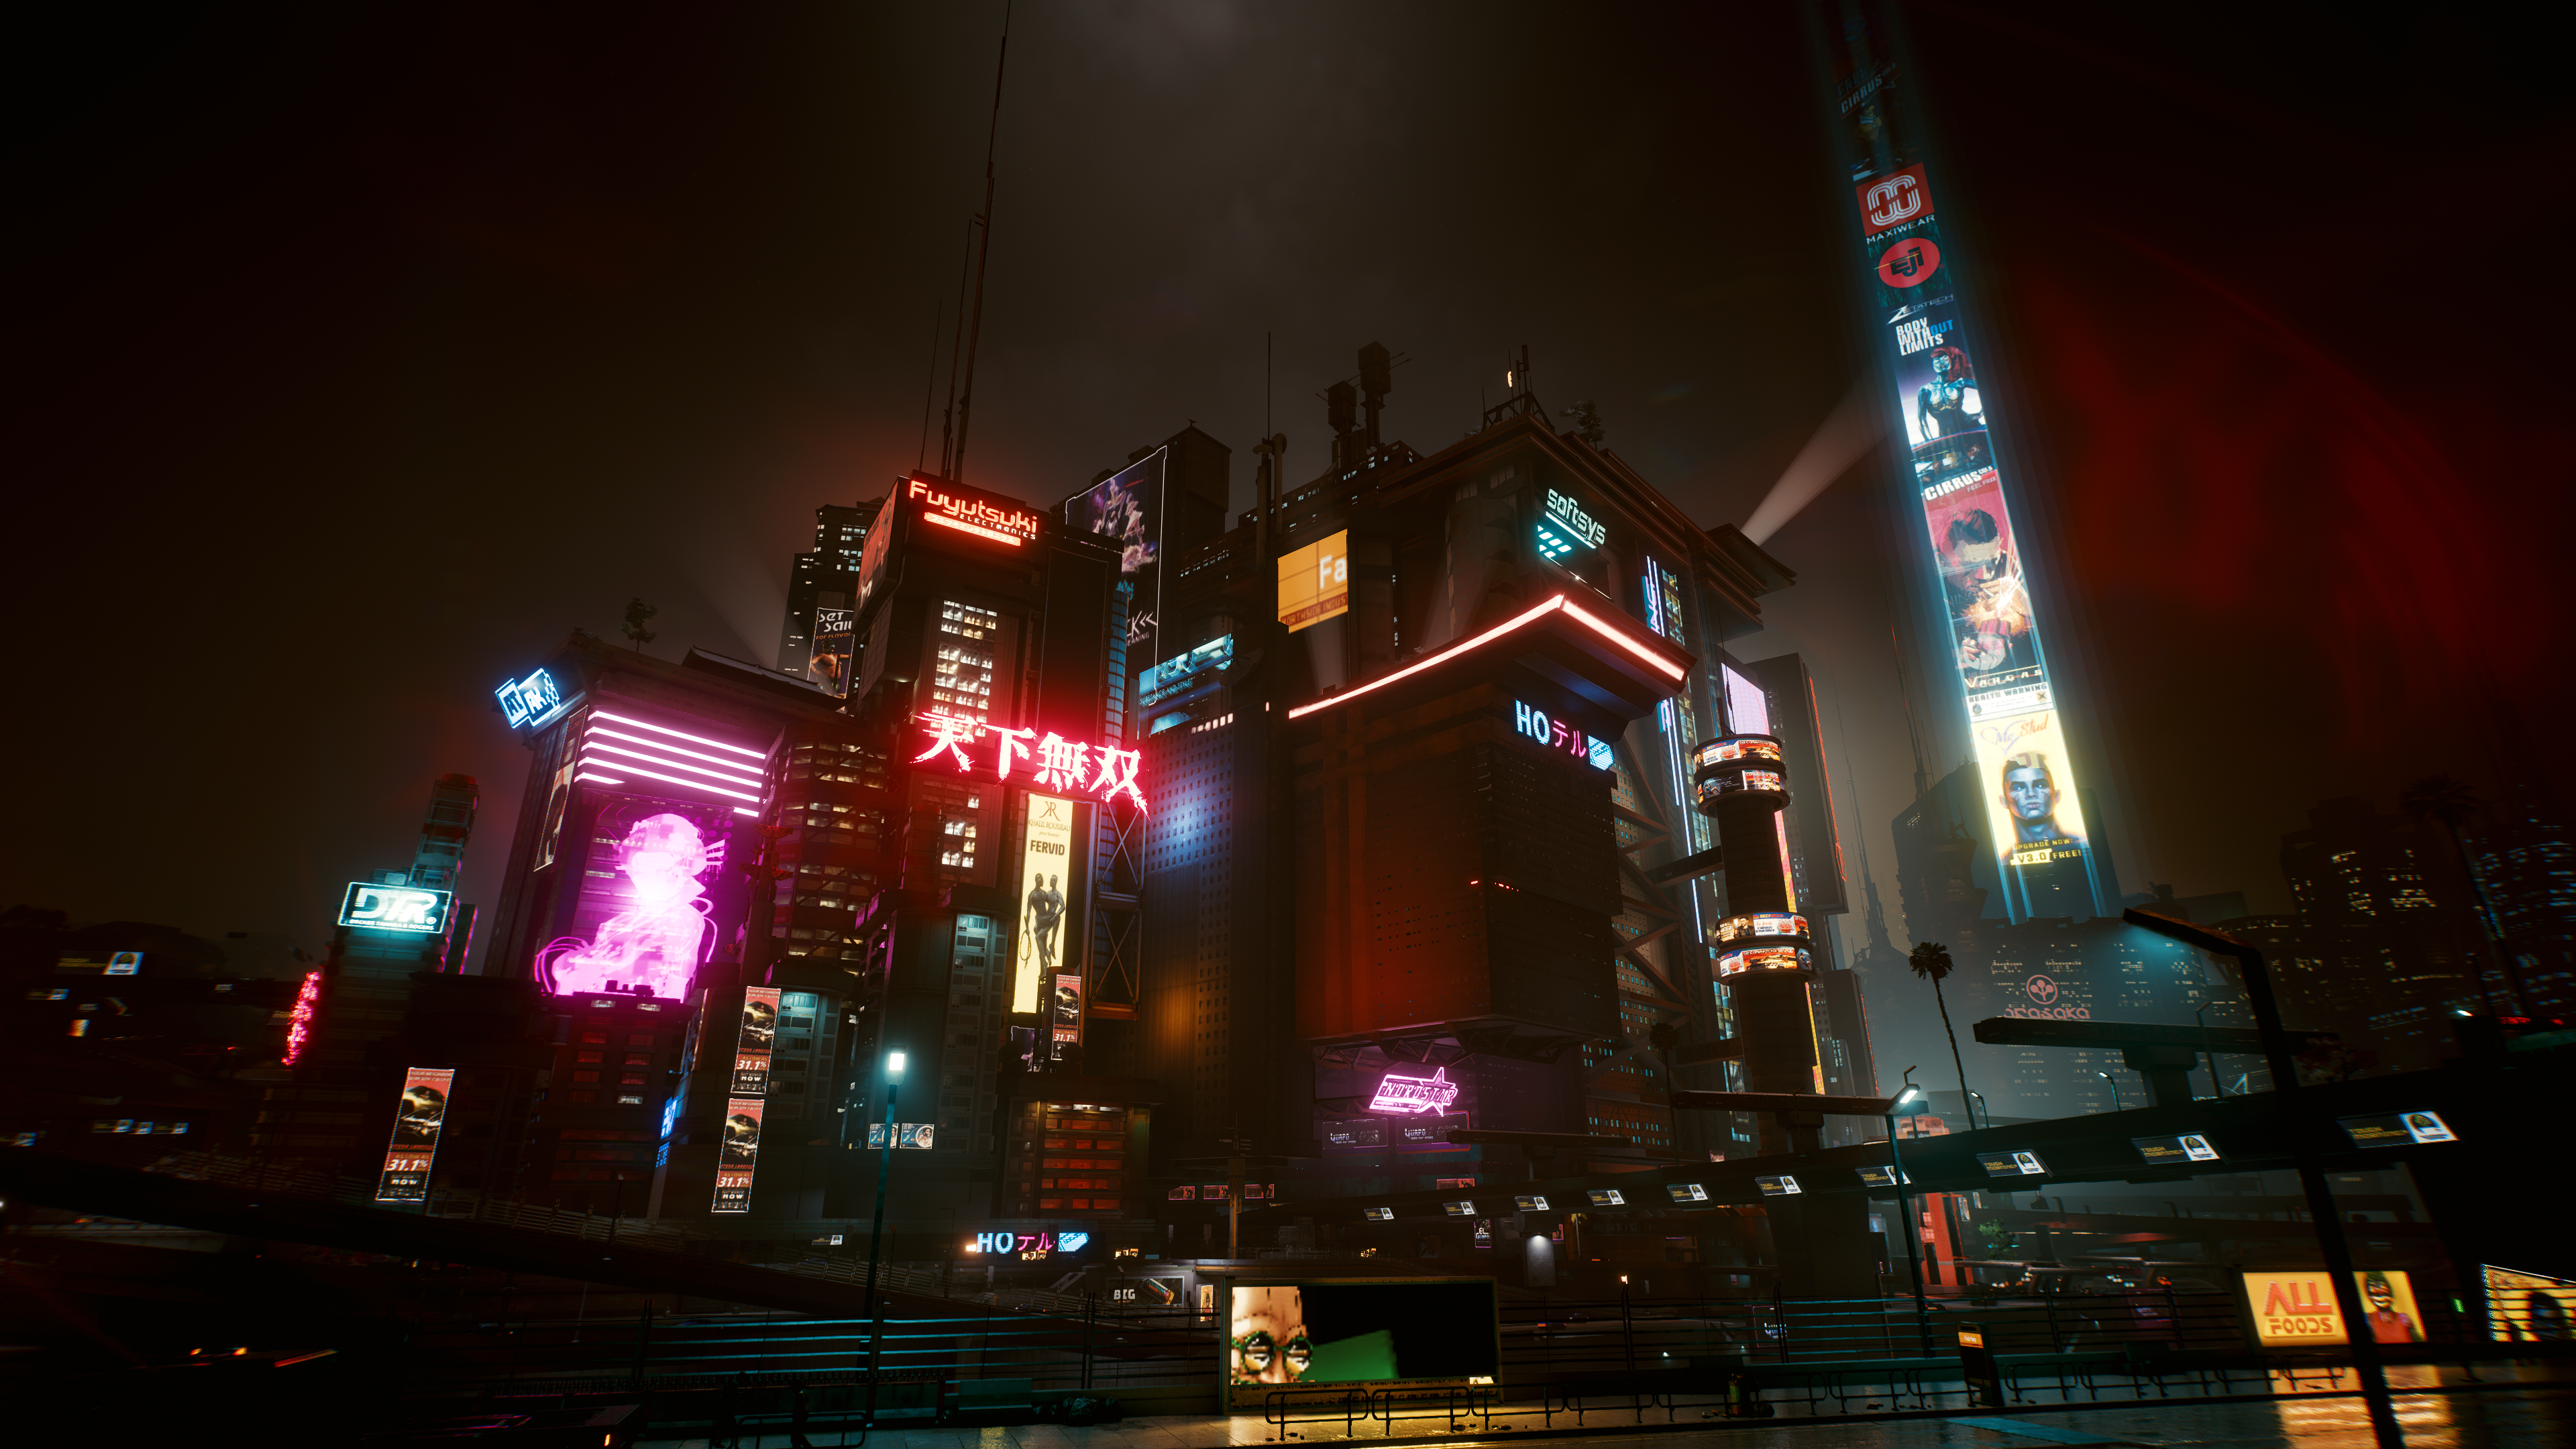 General 3840x2160 city Cyberpunk 2077 cyberpunk neon video games PC gaming screen shot futuristic futuristic city lights